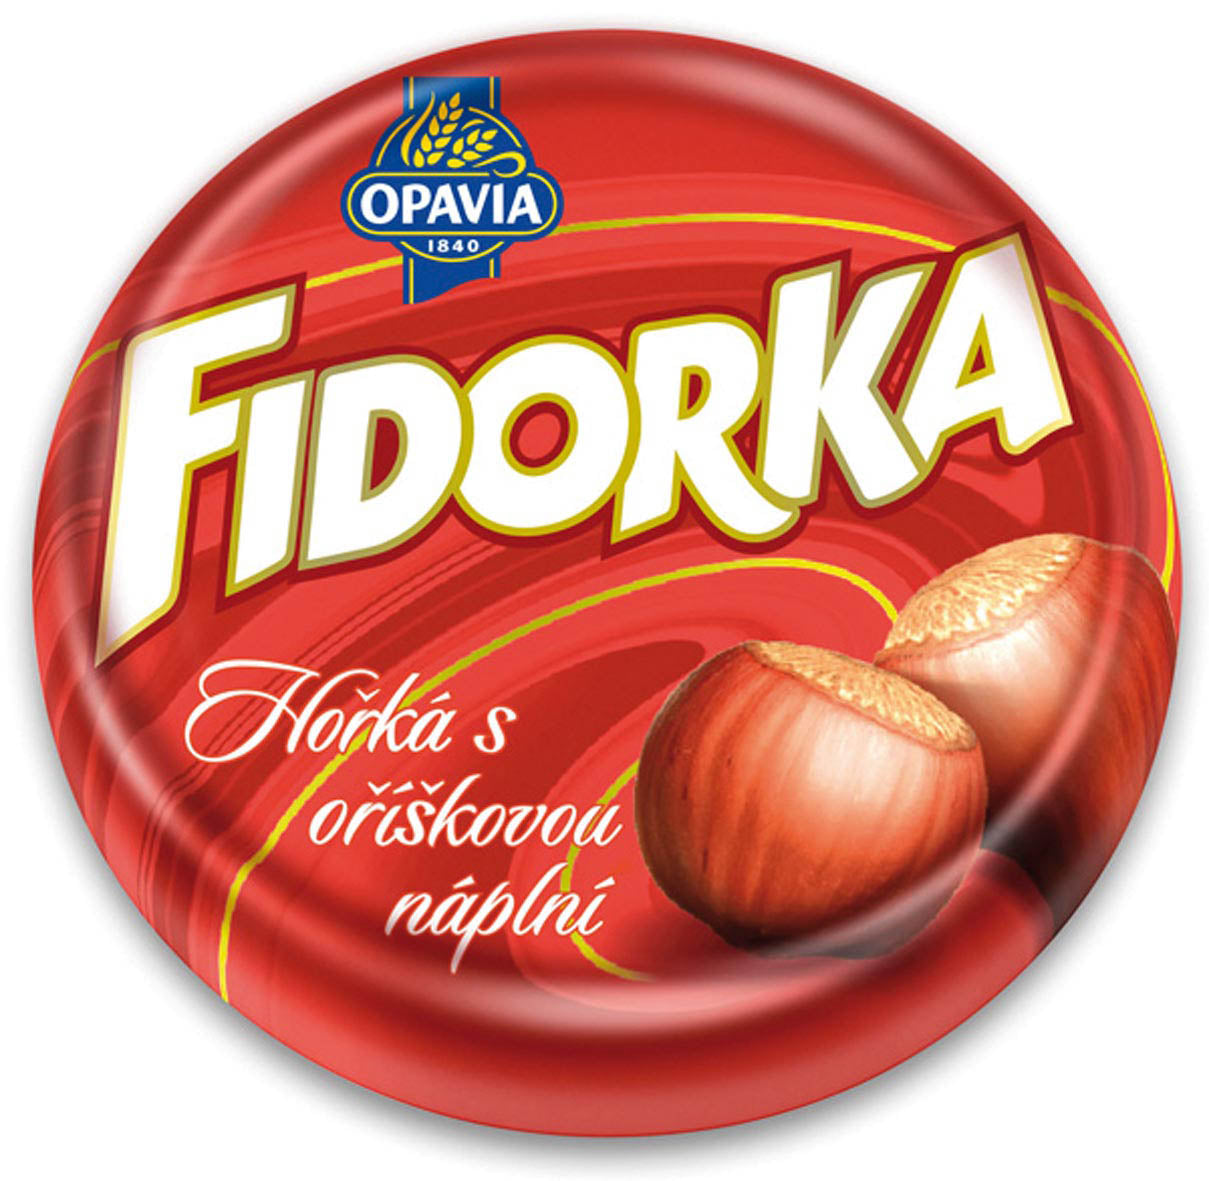 Opavia Fidorka 30g